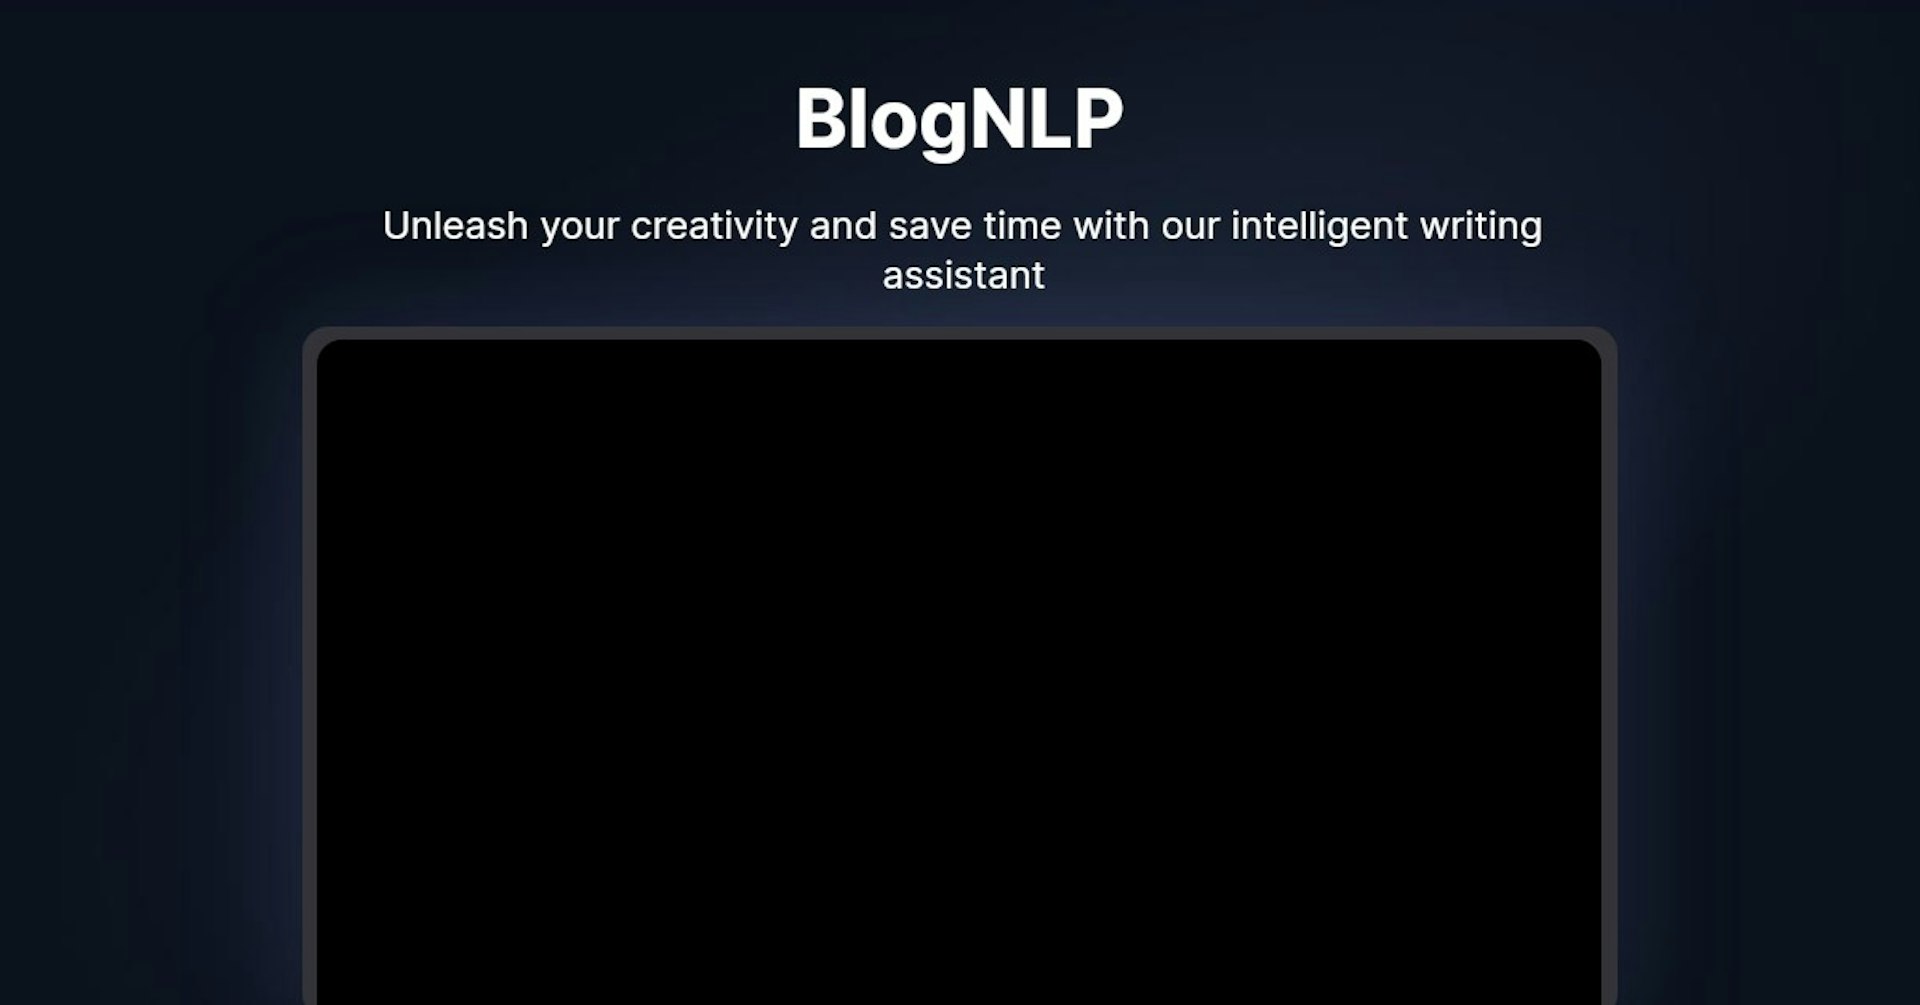 BlogNLP